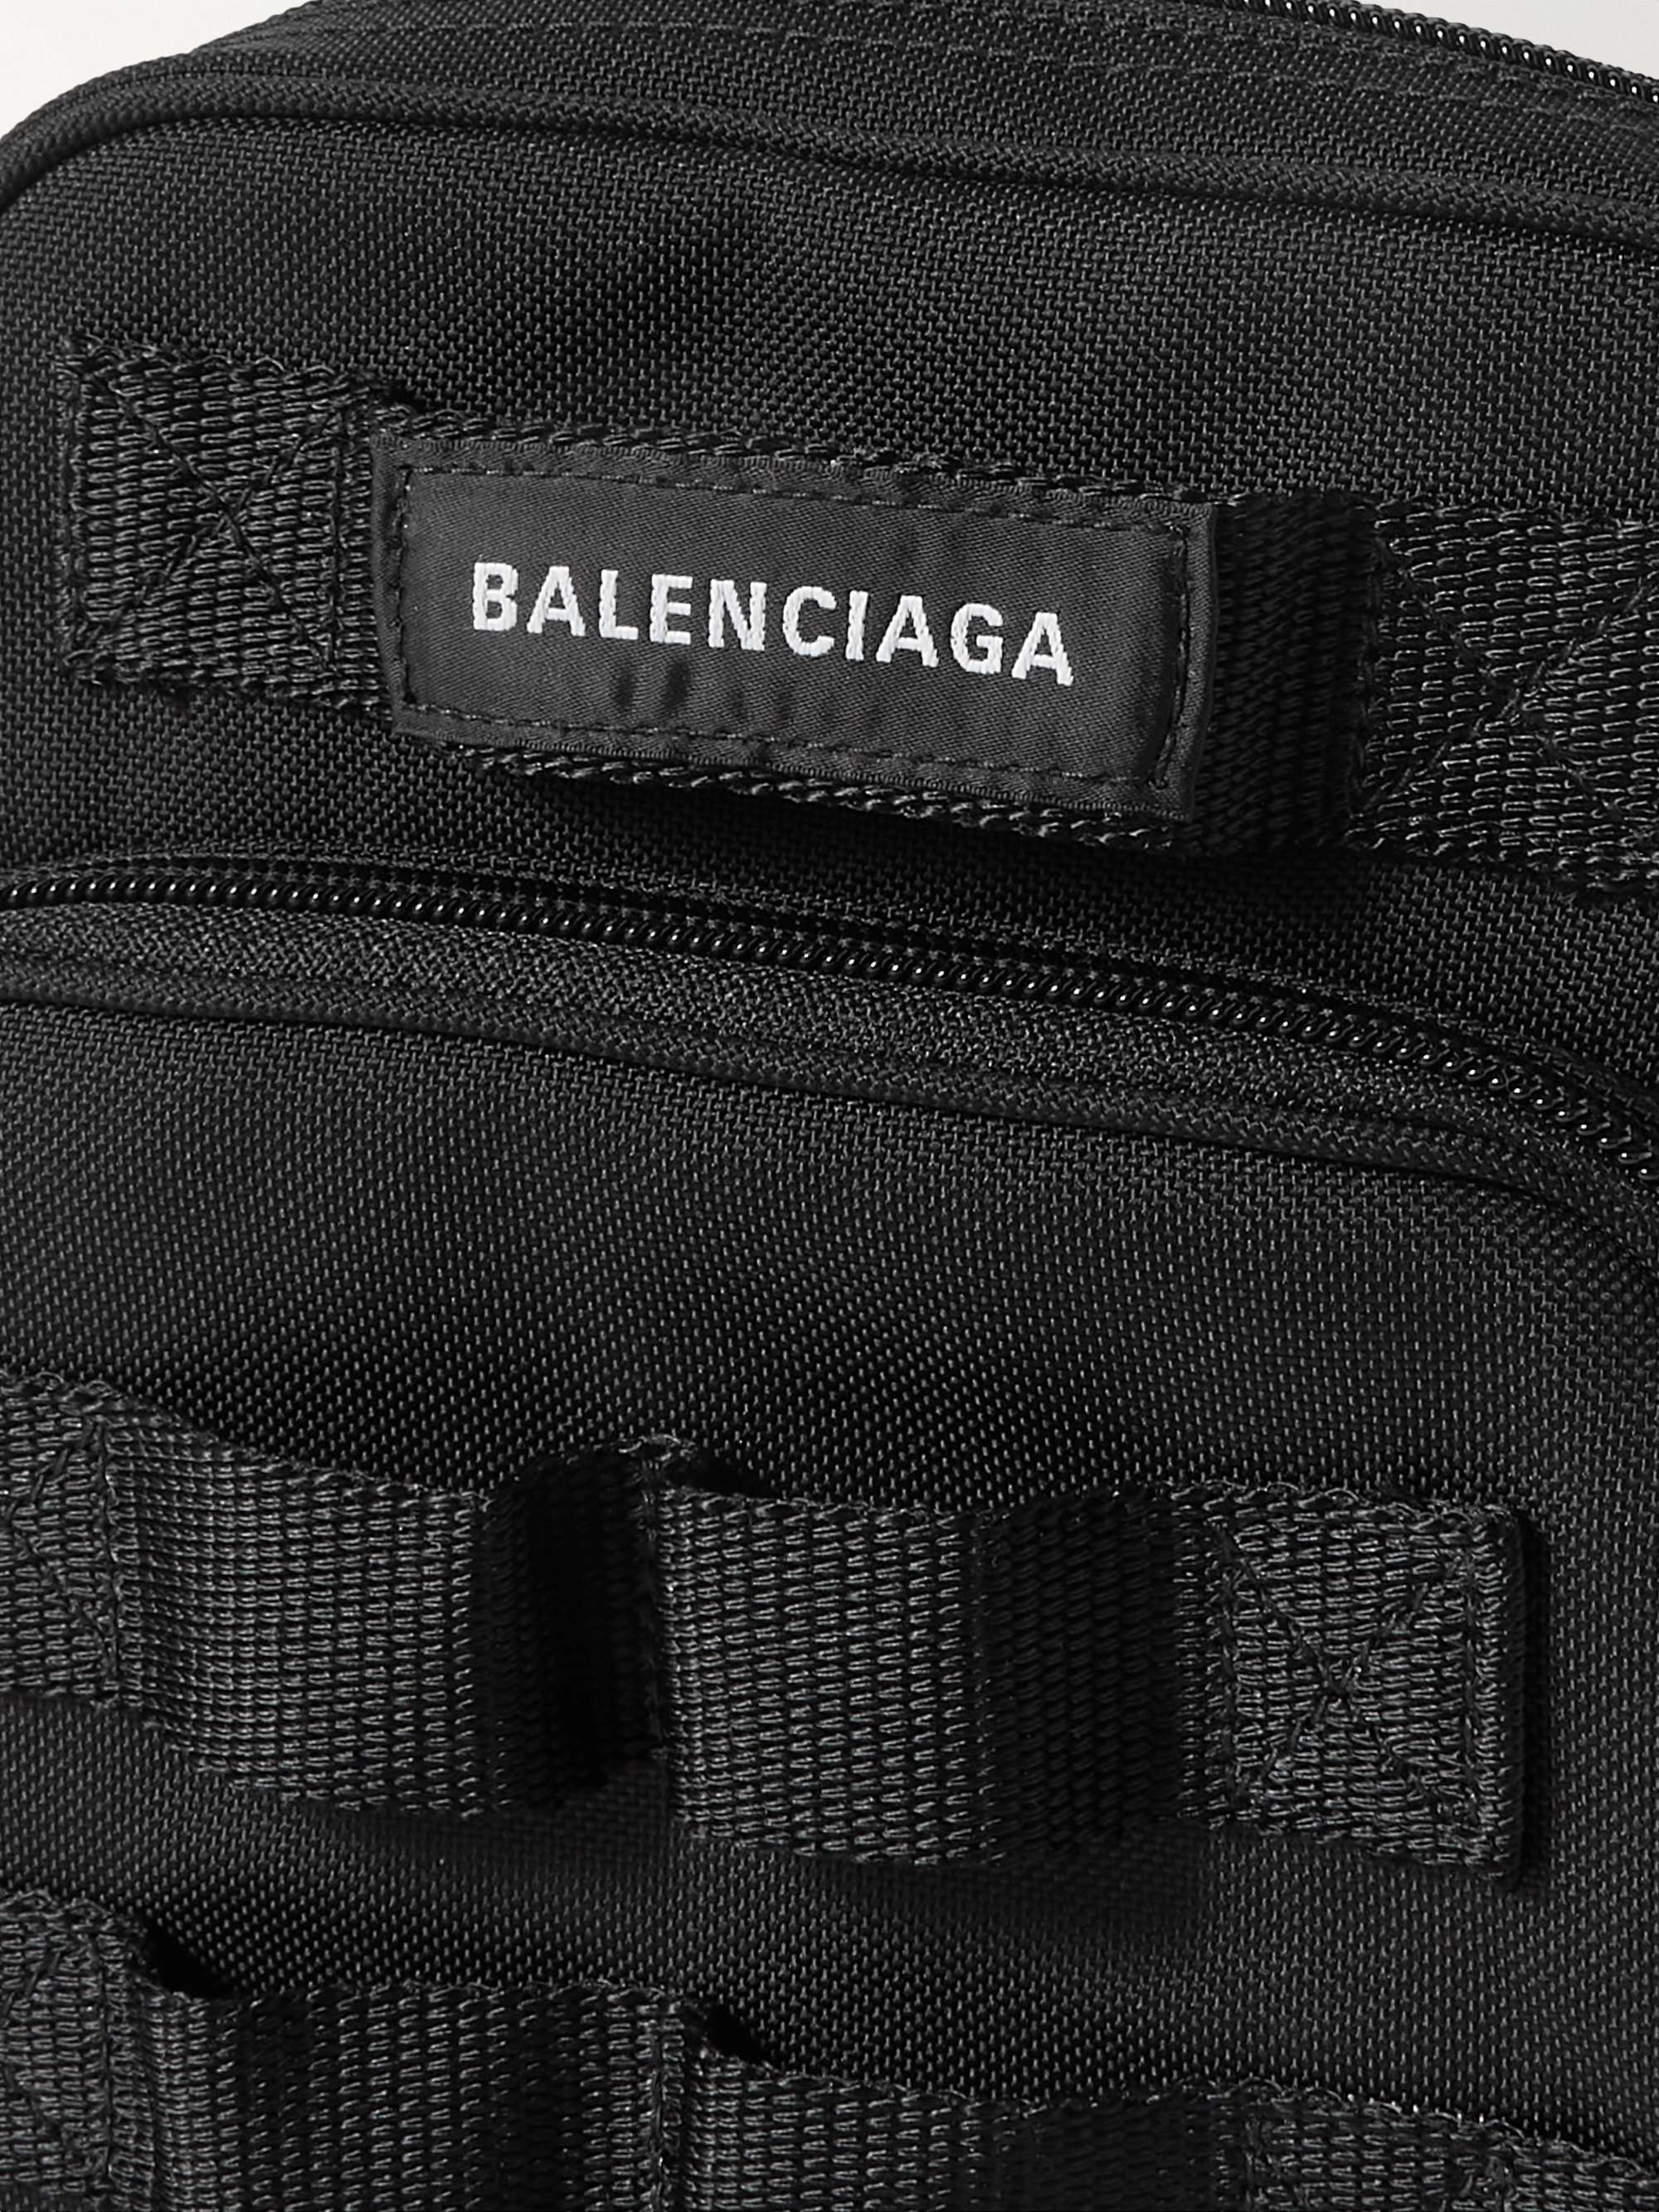 Tổng hợp hơn 56 về balenciaga army messenger bag mới nhất   cdgdbentreeduvn